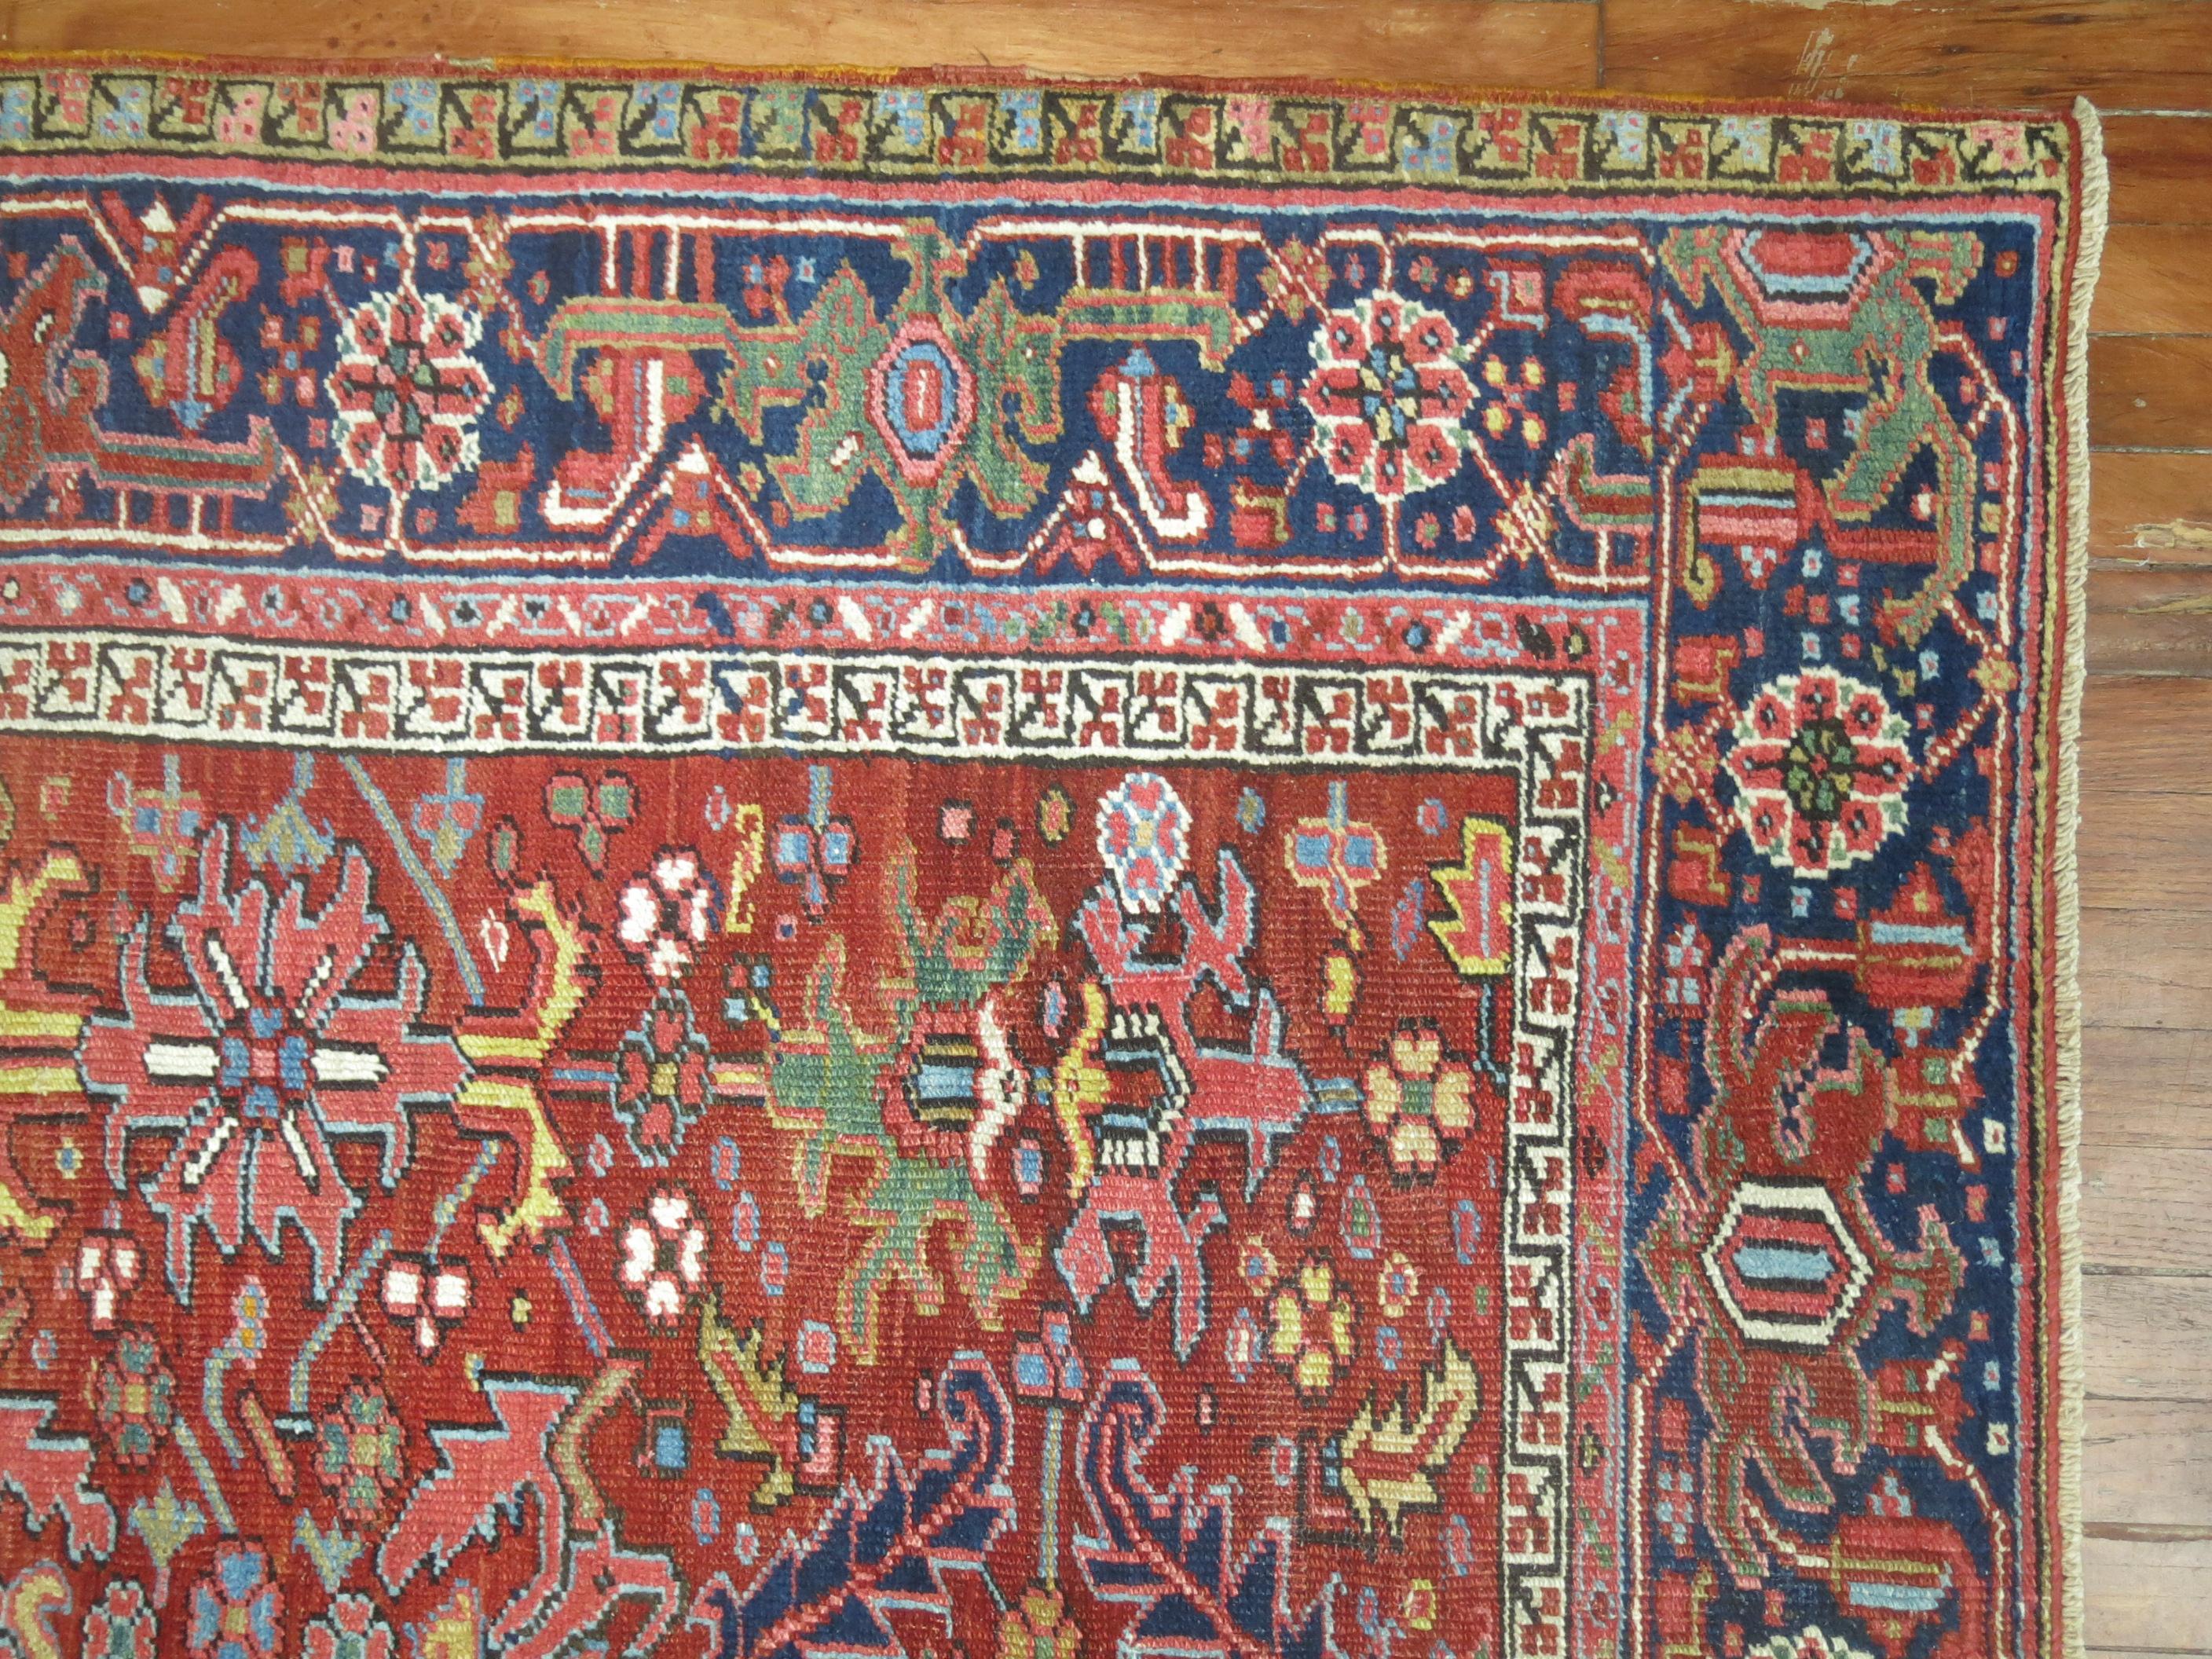 Tapis coloré persan Heriz du début du 20e siècle.

Mesures : 7'4'' x 10'6''.